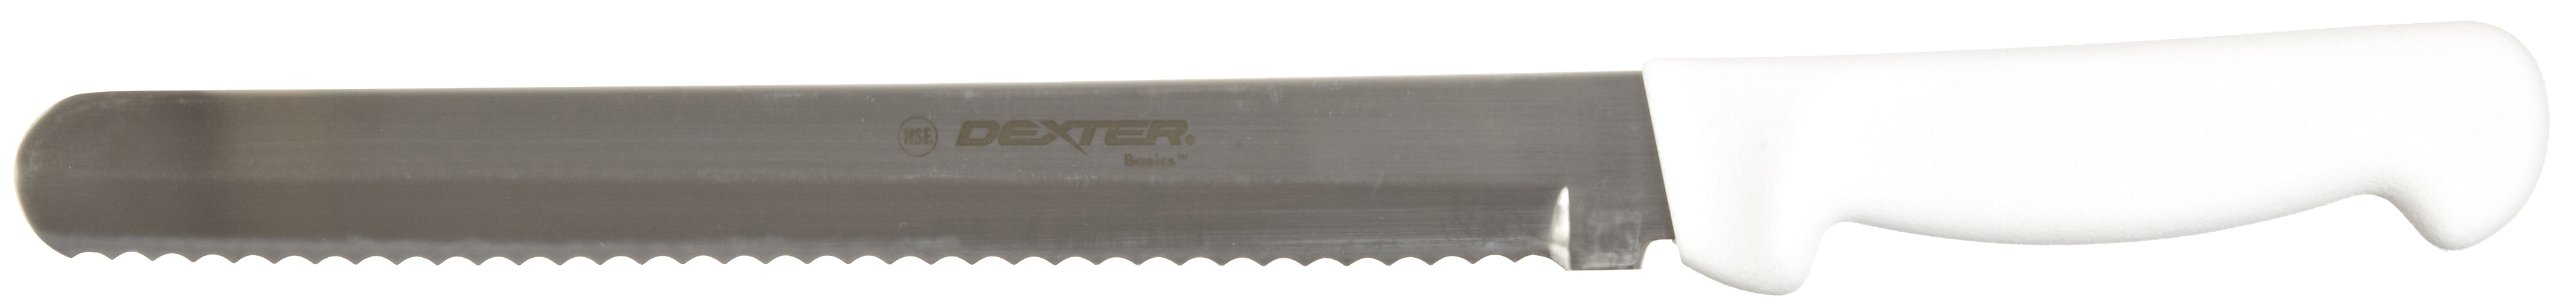 Basics P94804 10" White Scalloped Slicer with Polypropylene Handle